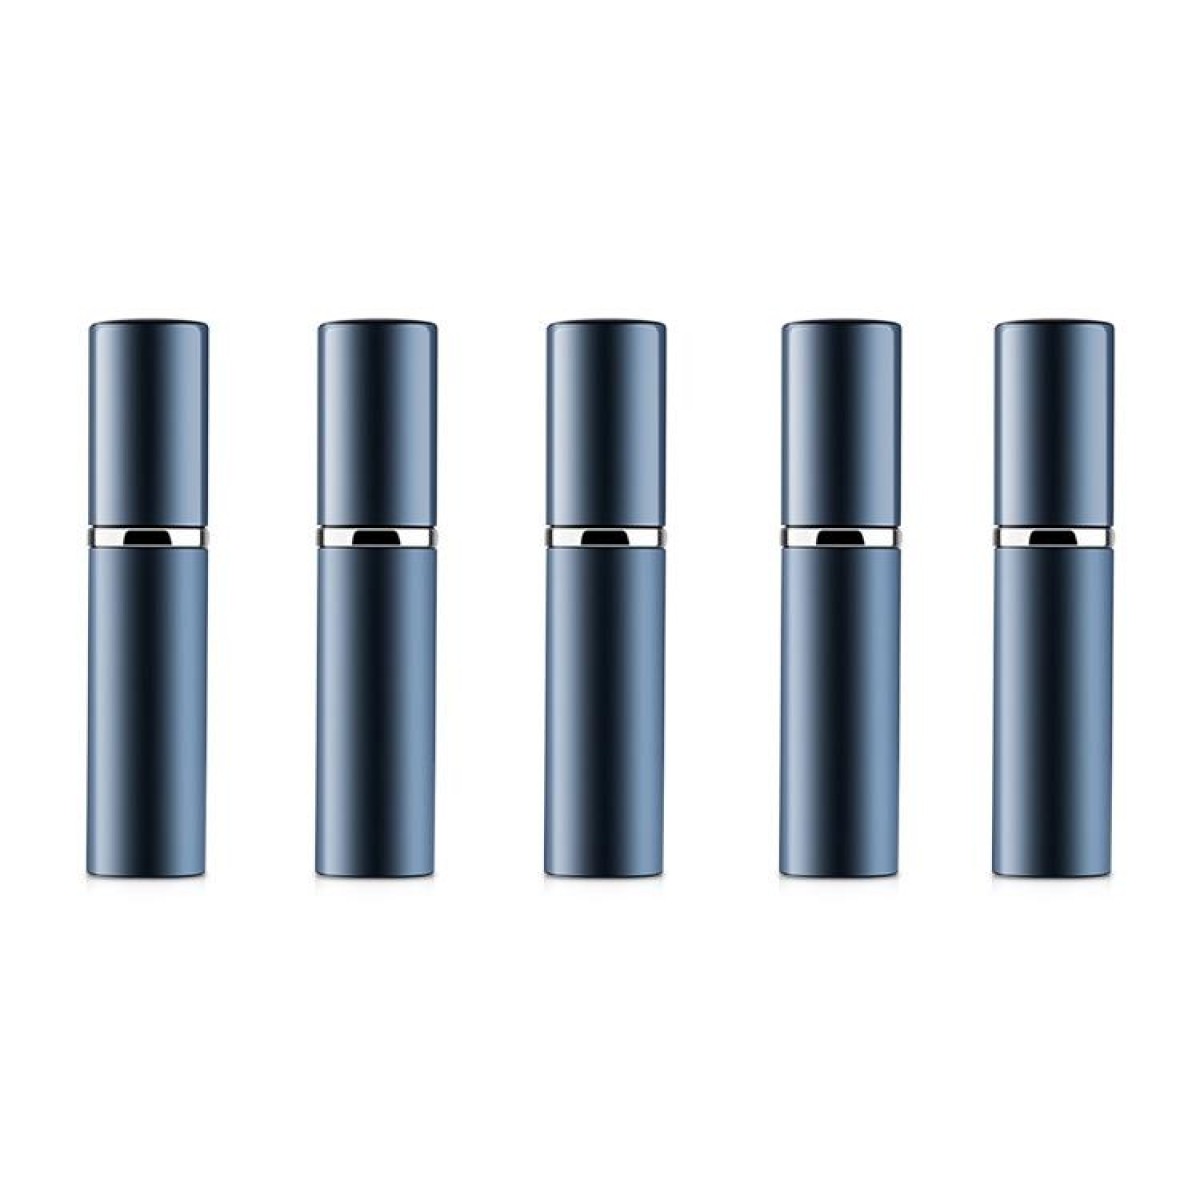 Portable Mini Refillable Glass Perfume Fine Mist Atomizers with Metallic Exterior, 5ml(Blue)